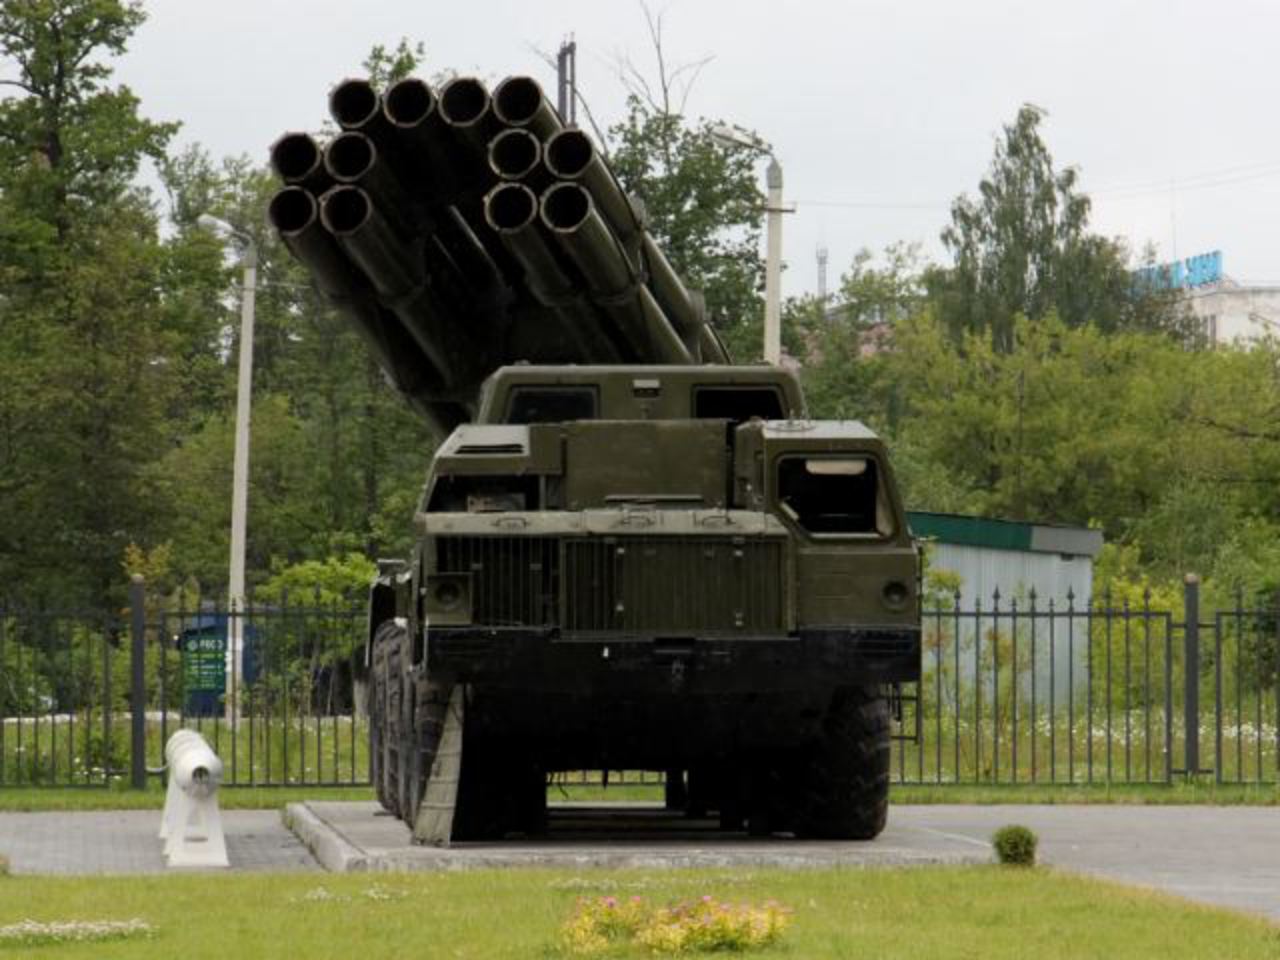 Système de lance-roquettes multiples BM-30 Smerch 9K58 300mm technique...